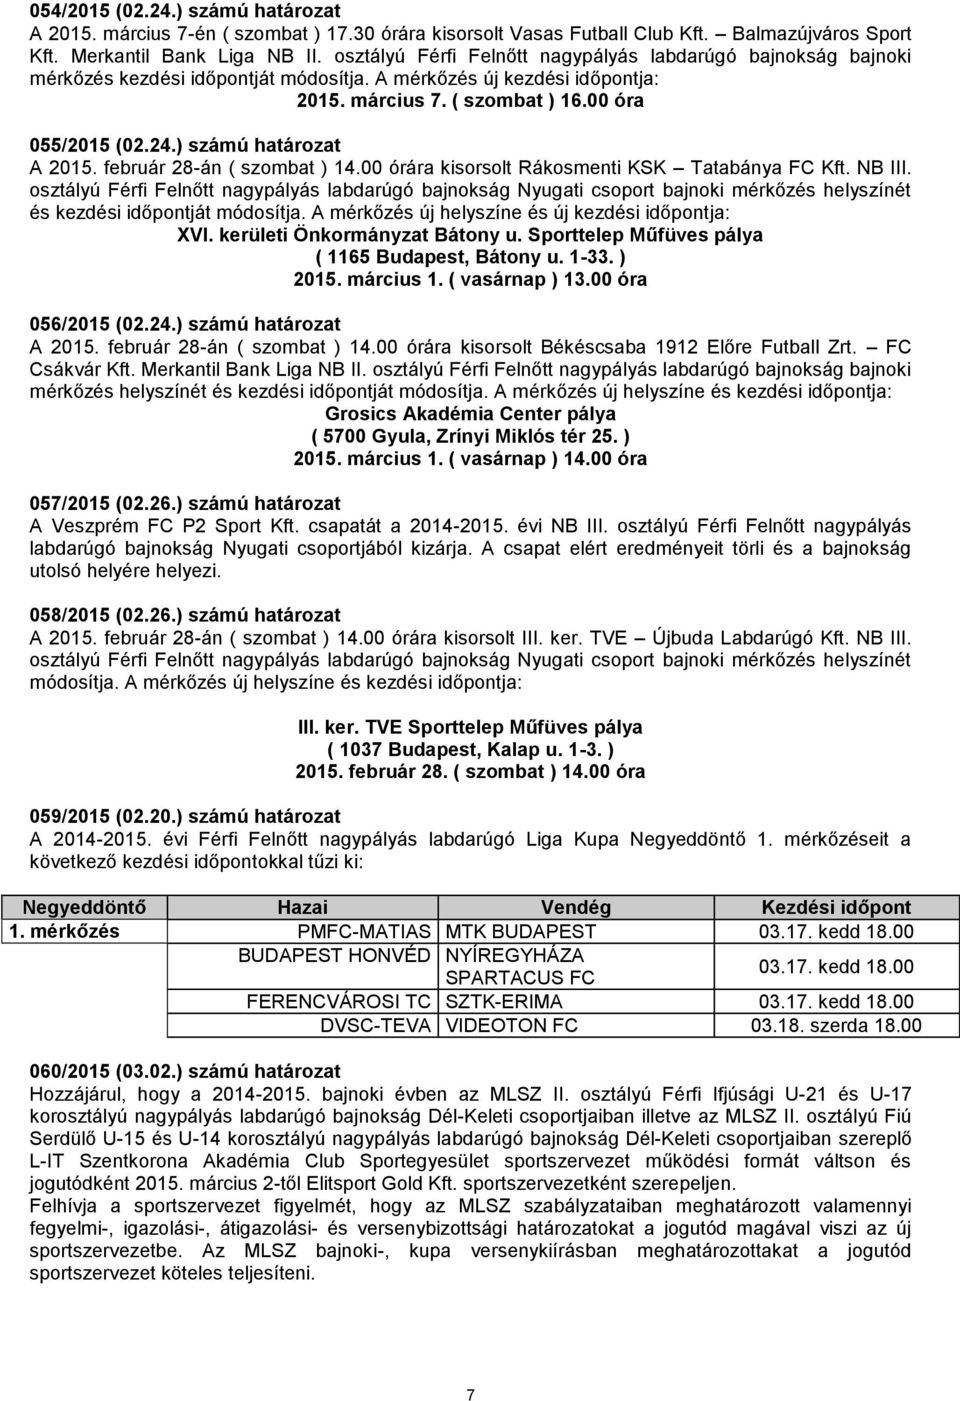 ) számú határozat A 2015. február 28-án ( szombat ) 14.00 órára kisorsolt Rákosmenti KSK Tatabánya FC Kft. NB III.